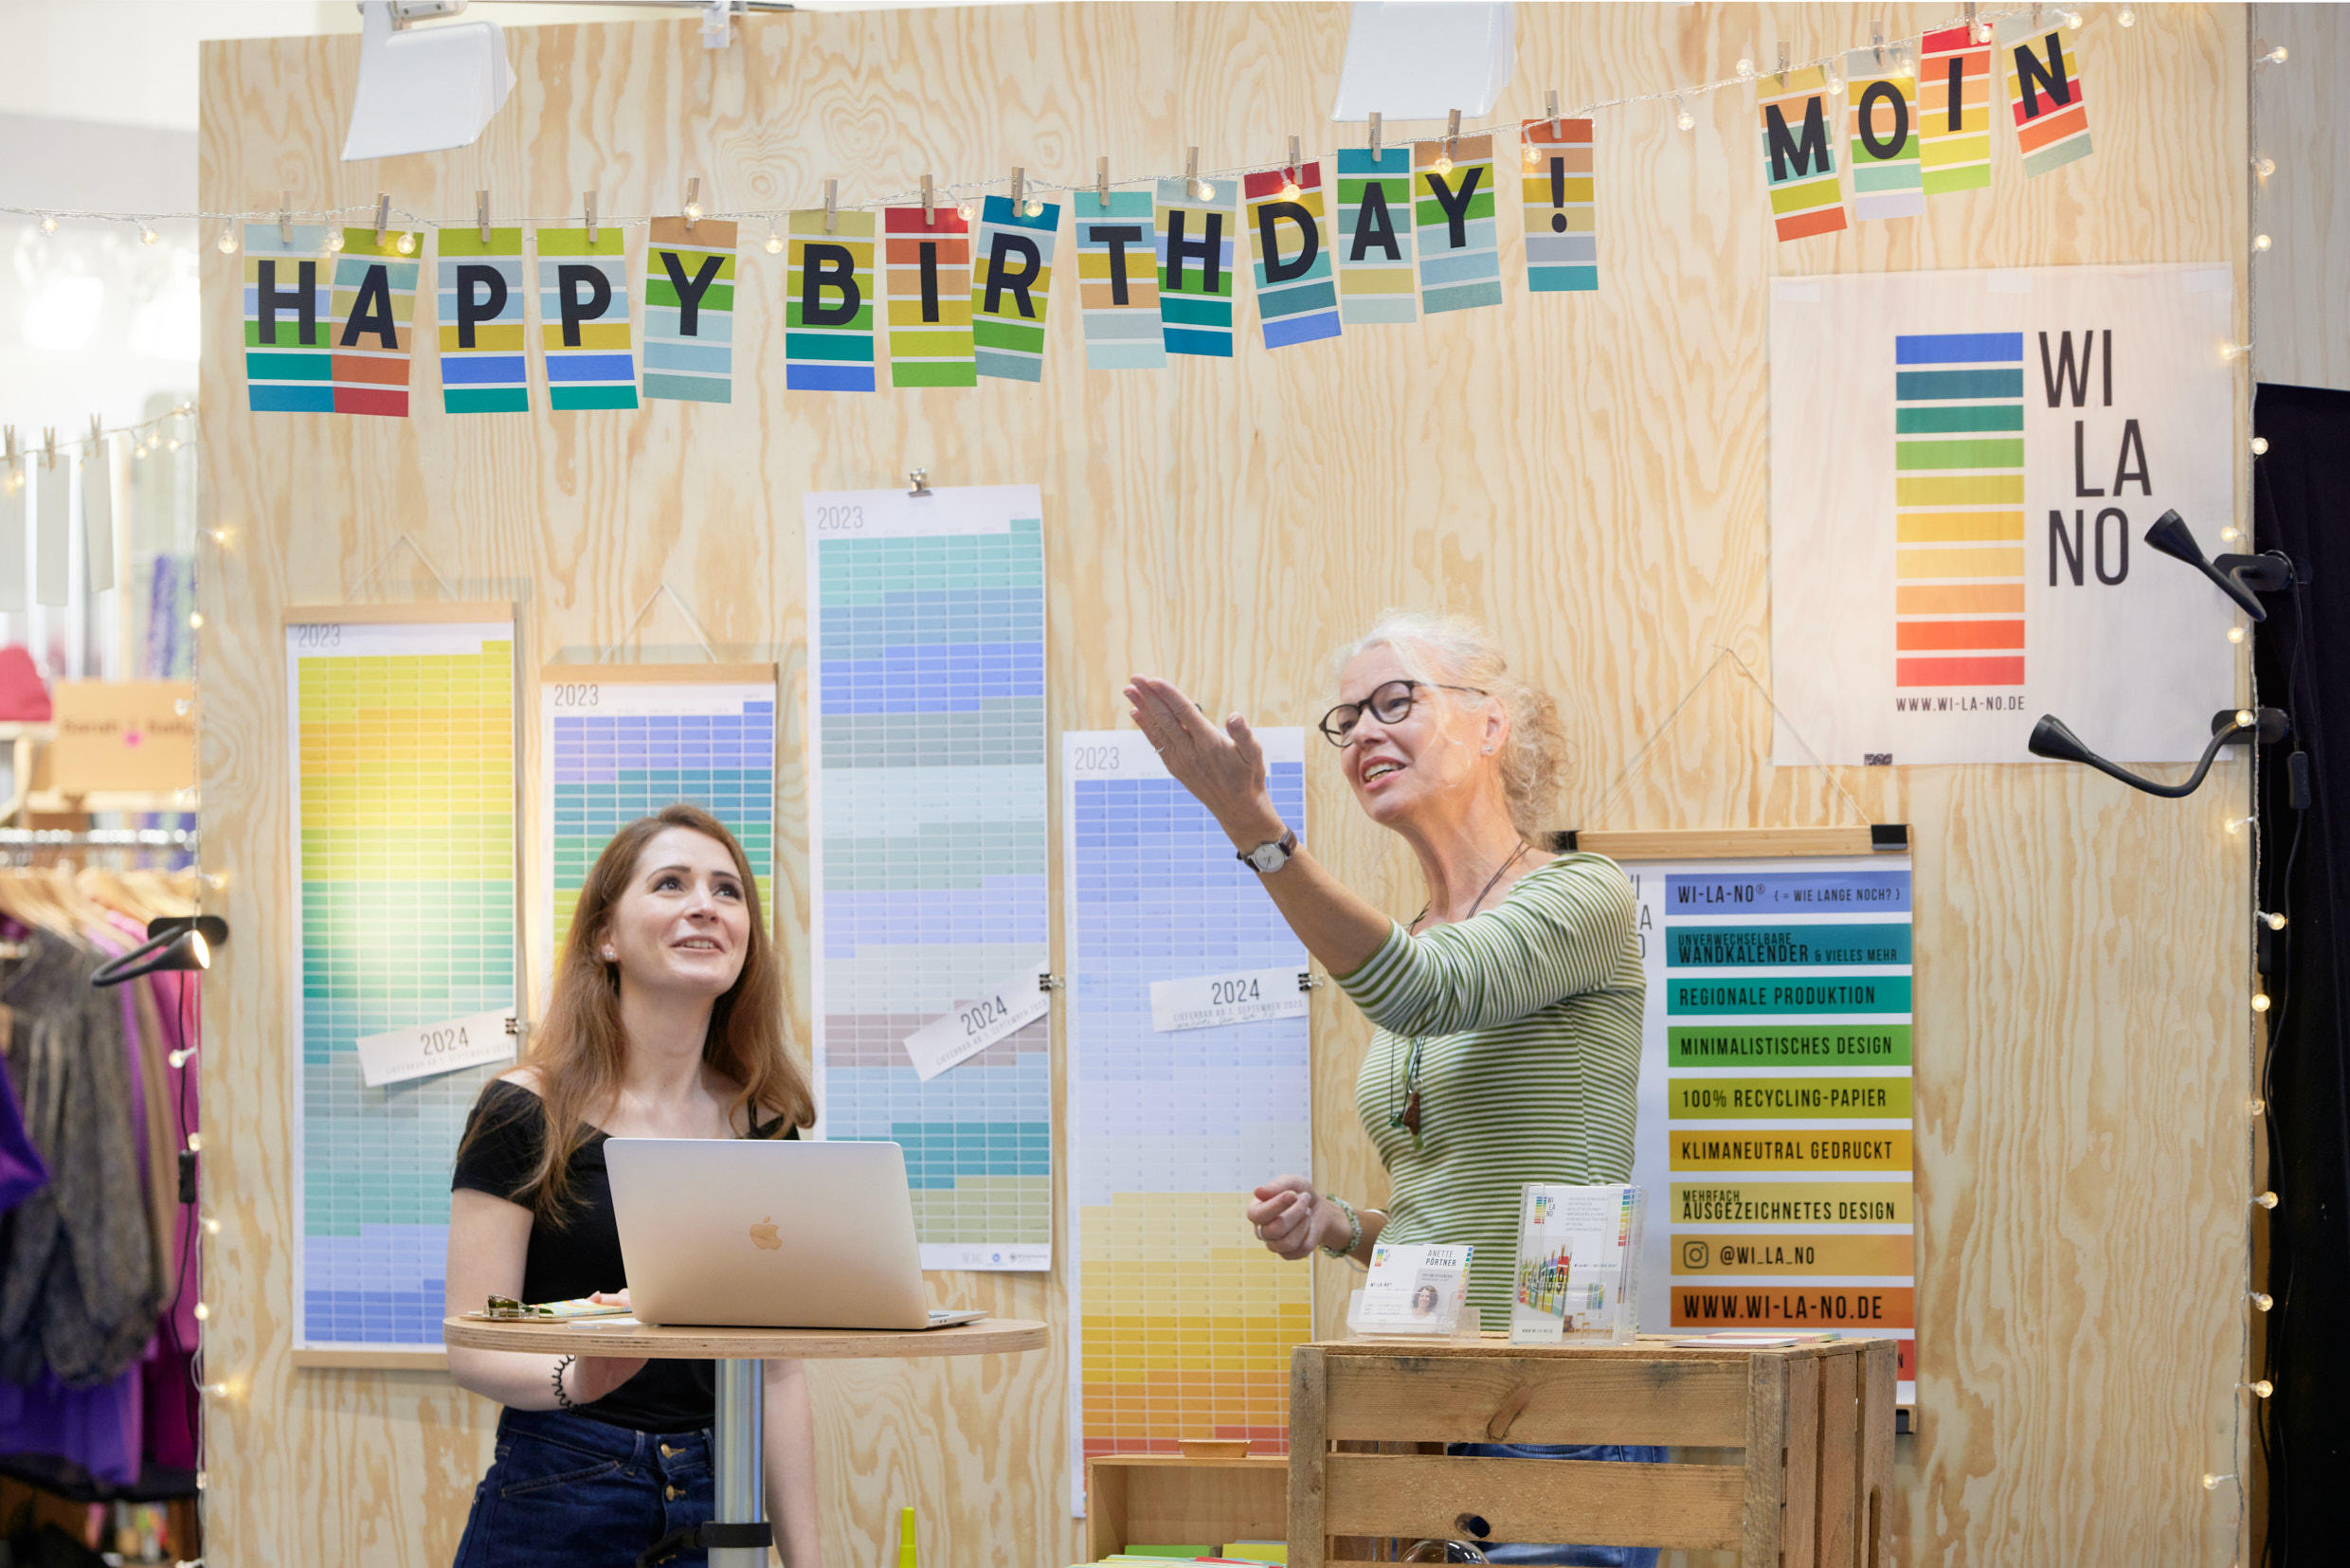 Happy Birthday, Nordstil! Zu ihrem 10-jährigen Bestehen präsentiert die Ordermesse im Norden besonders viele Produktneuheiten.